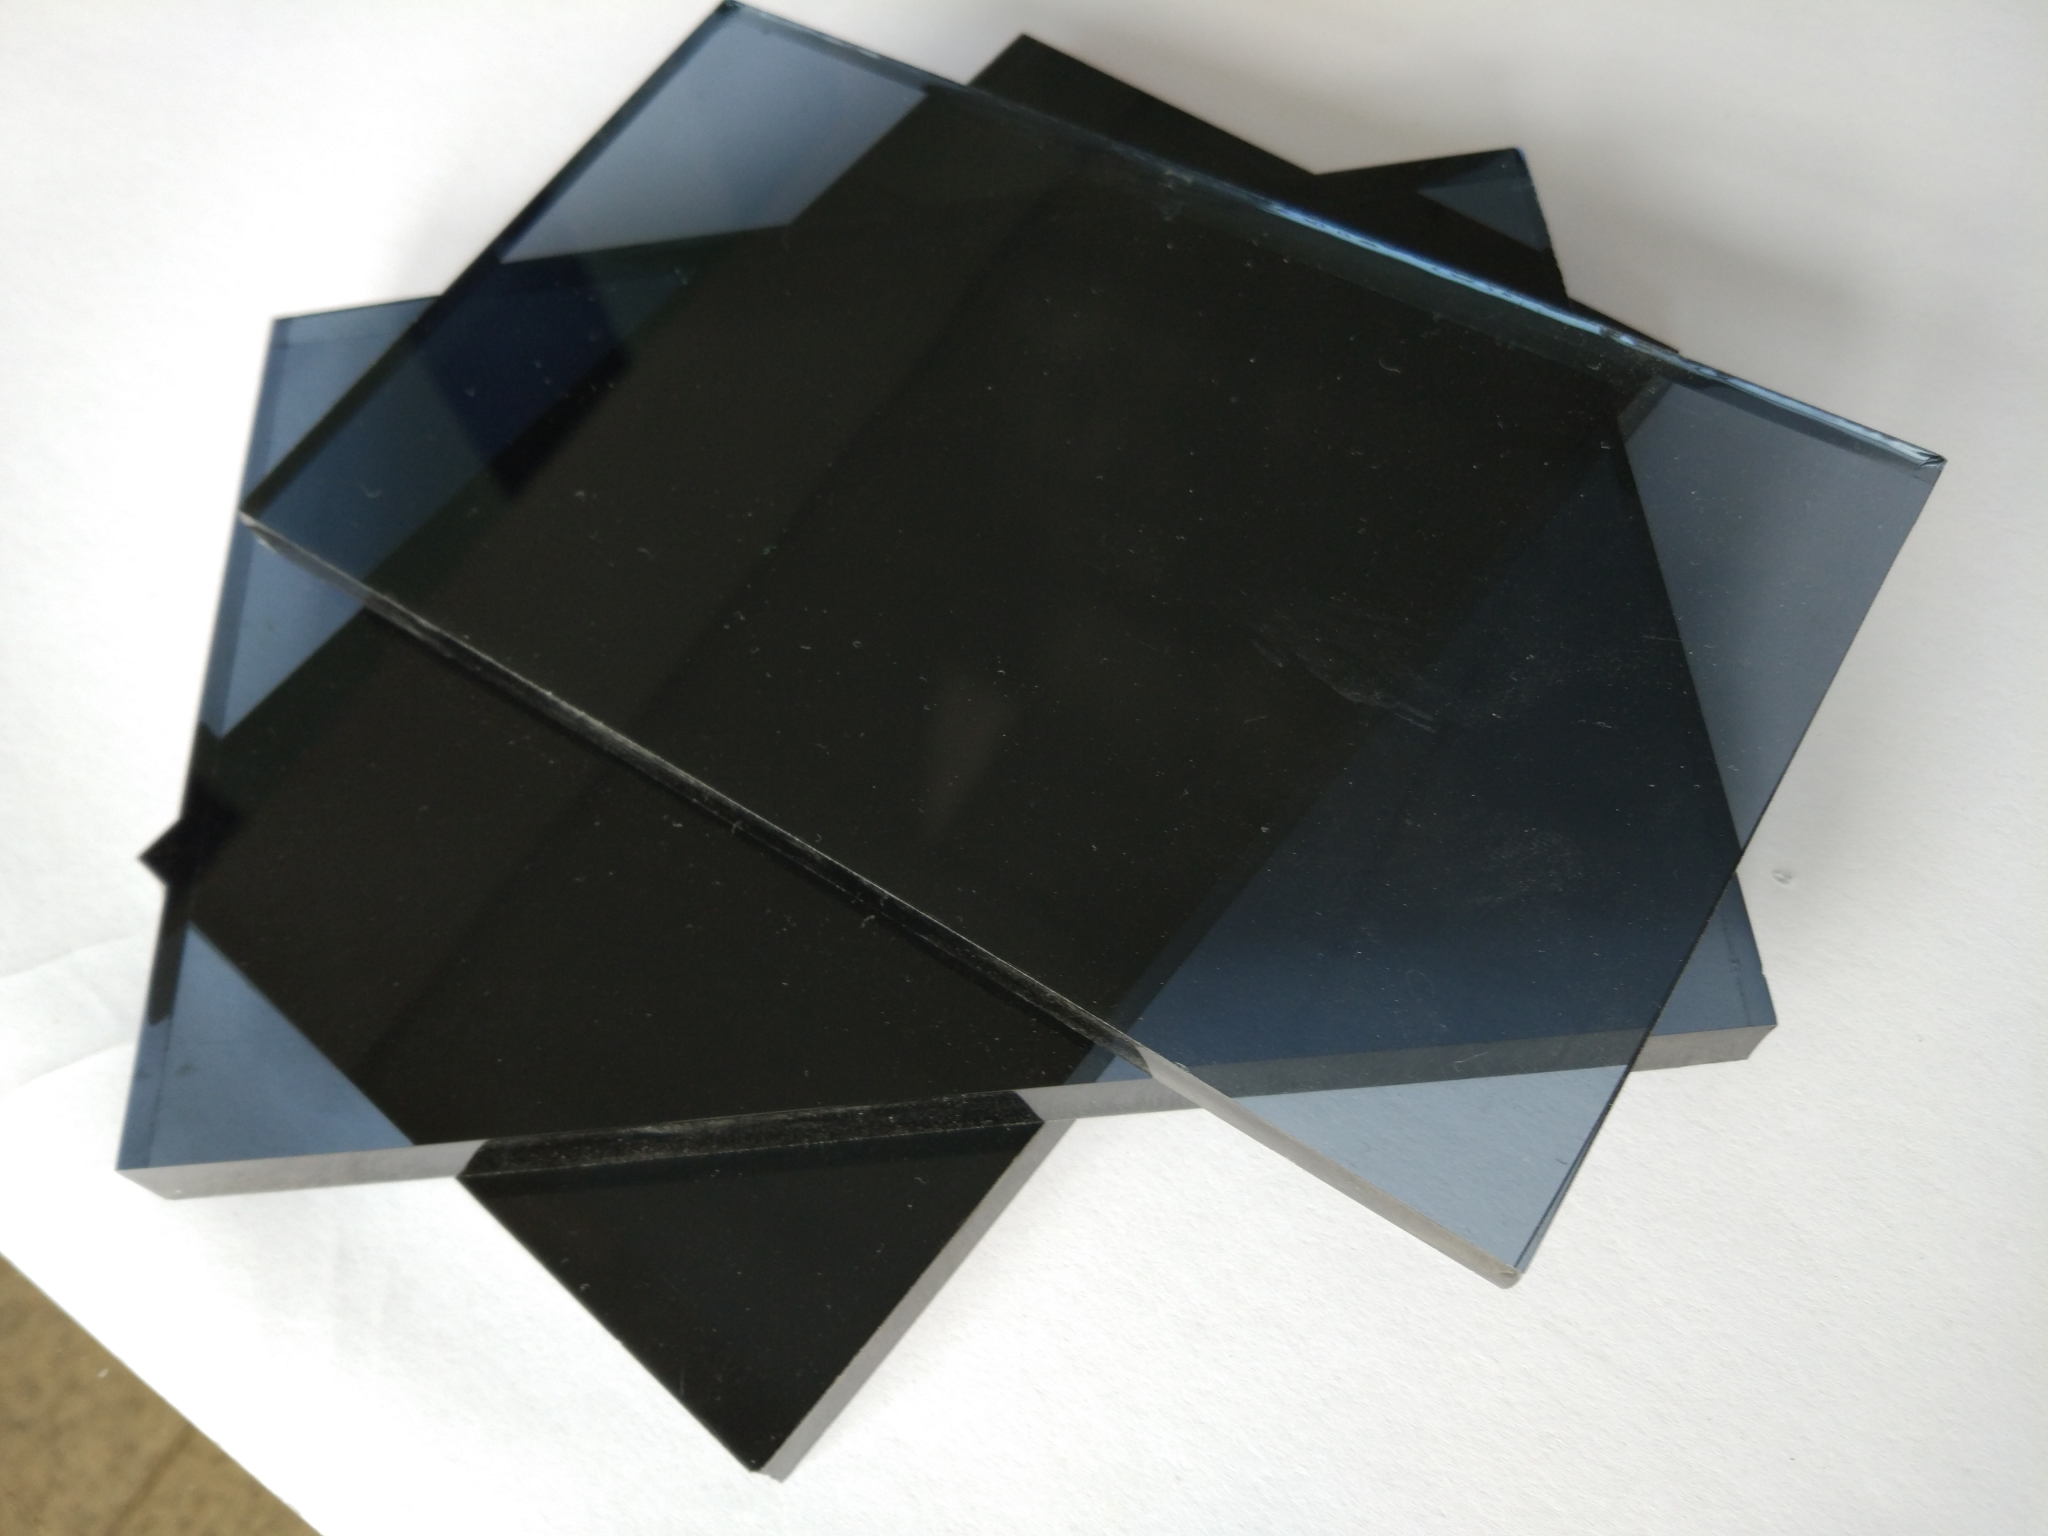 新品订制做灰色黑色蓝色绿色透明钢化玻璃桌面隔断层板更环保美观